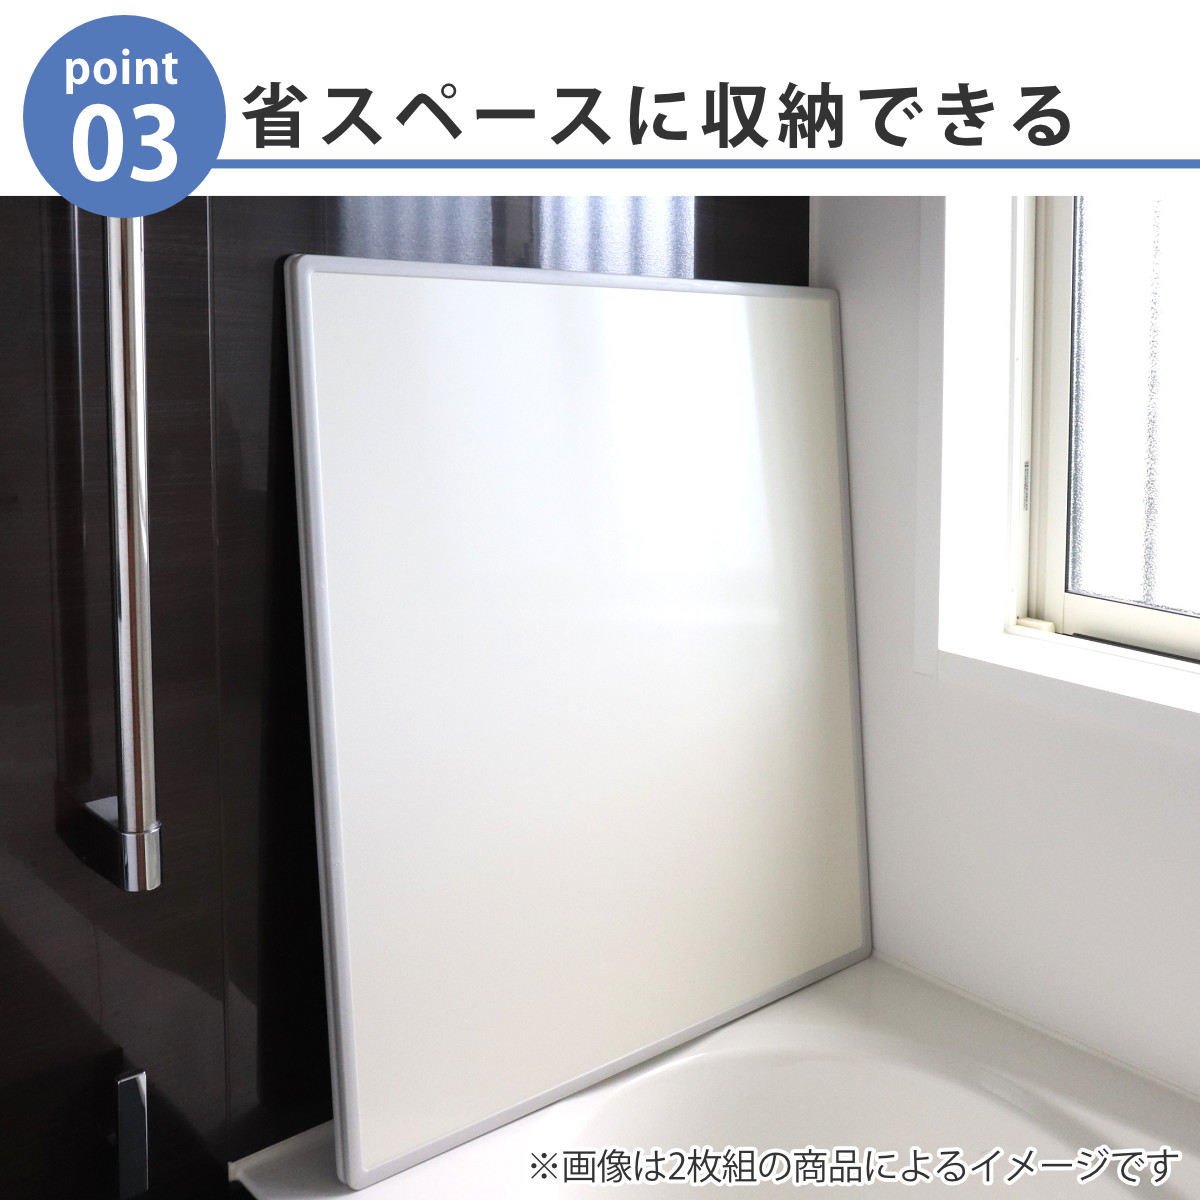 特典付き 風呂ふた 組み合わせ 75×140cm 用 L14 3枚組 日本製 抗菌